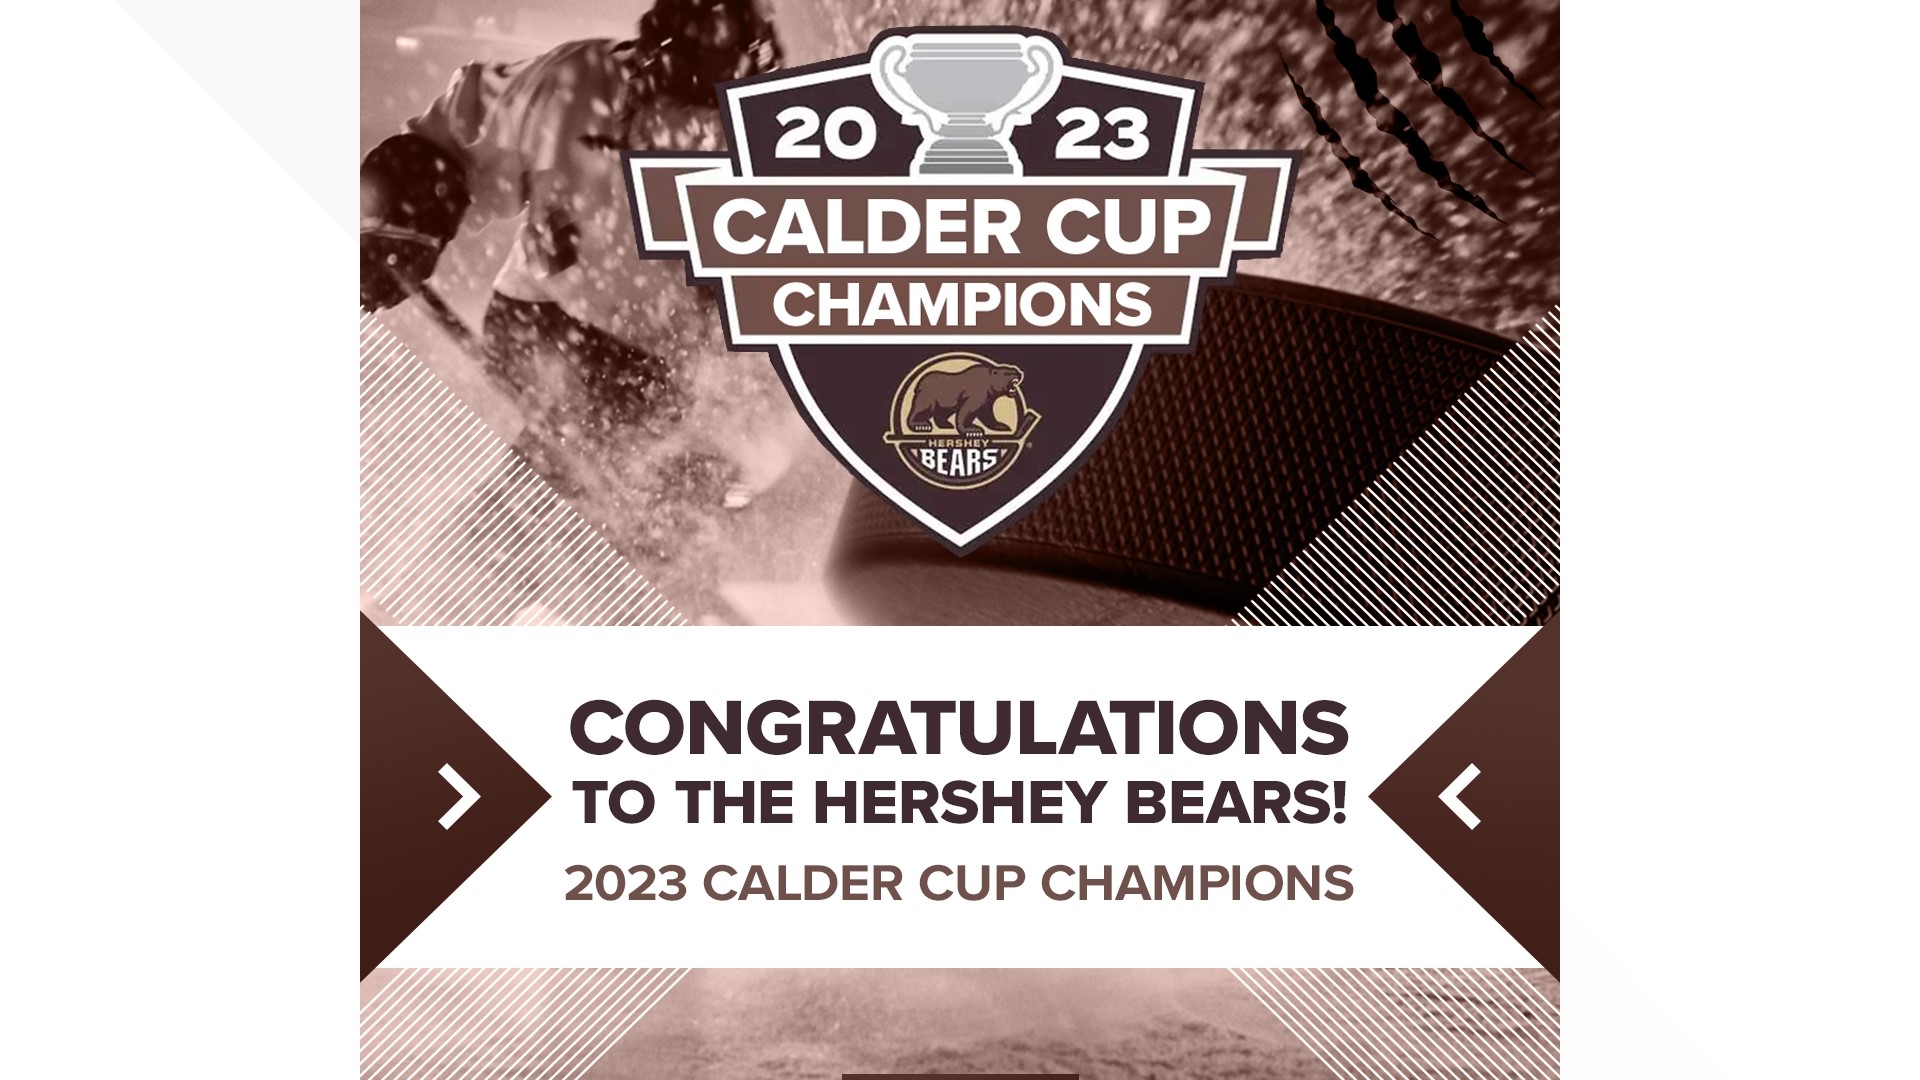 Hershey Bears win 2023 Calder Cup Finals